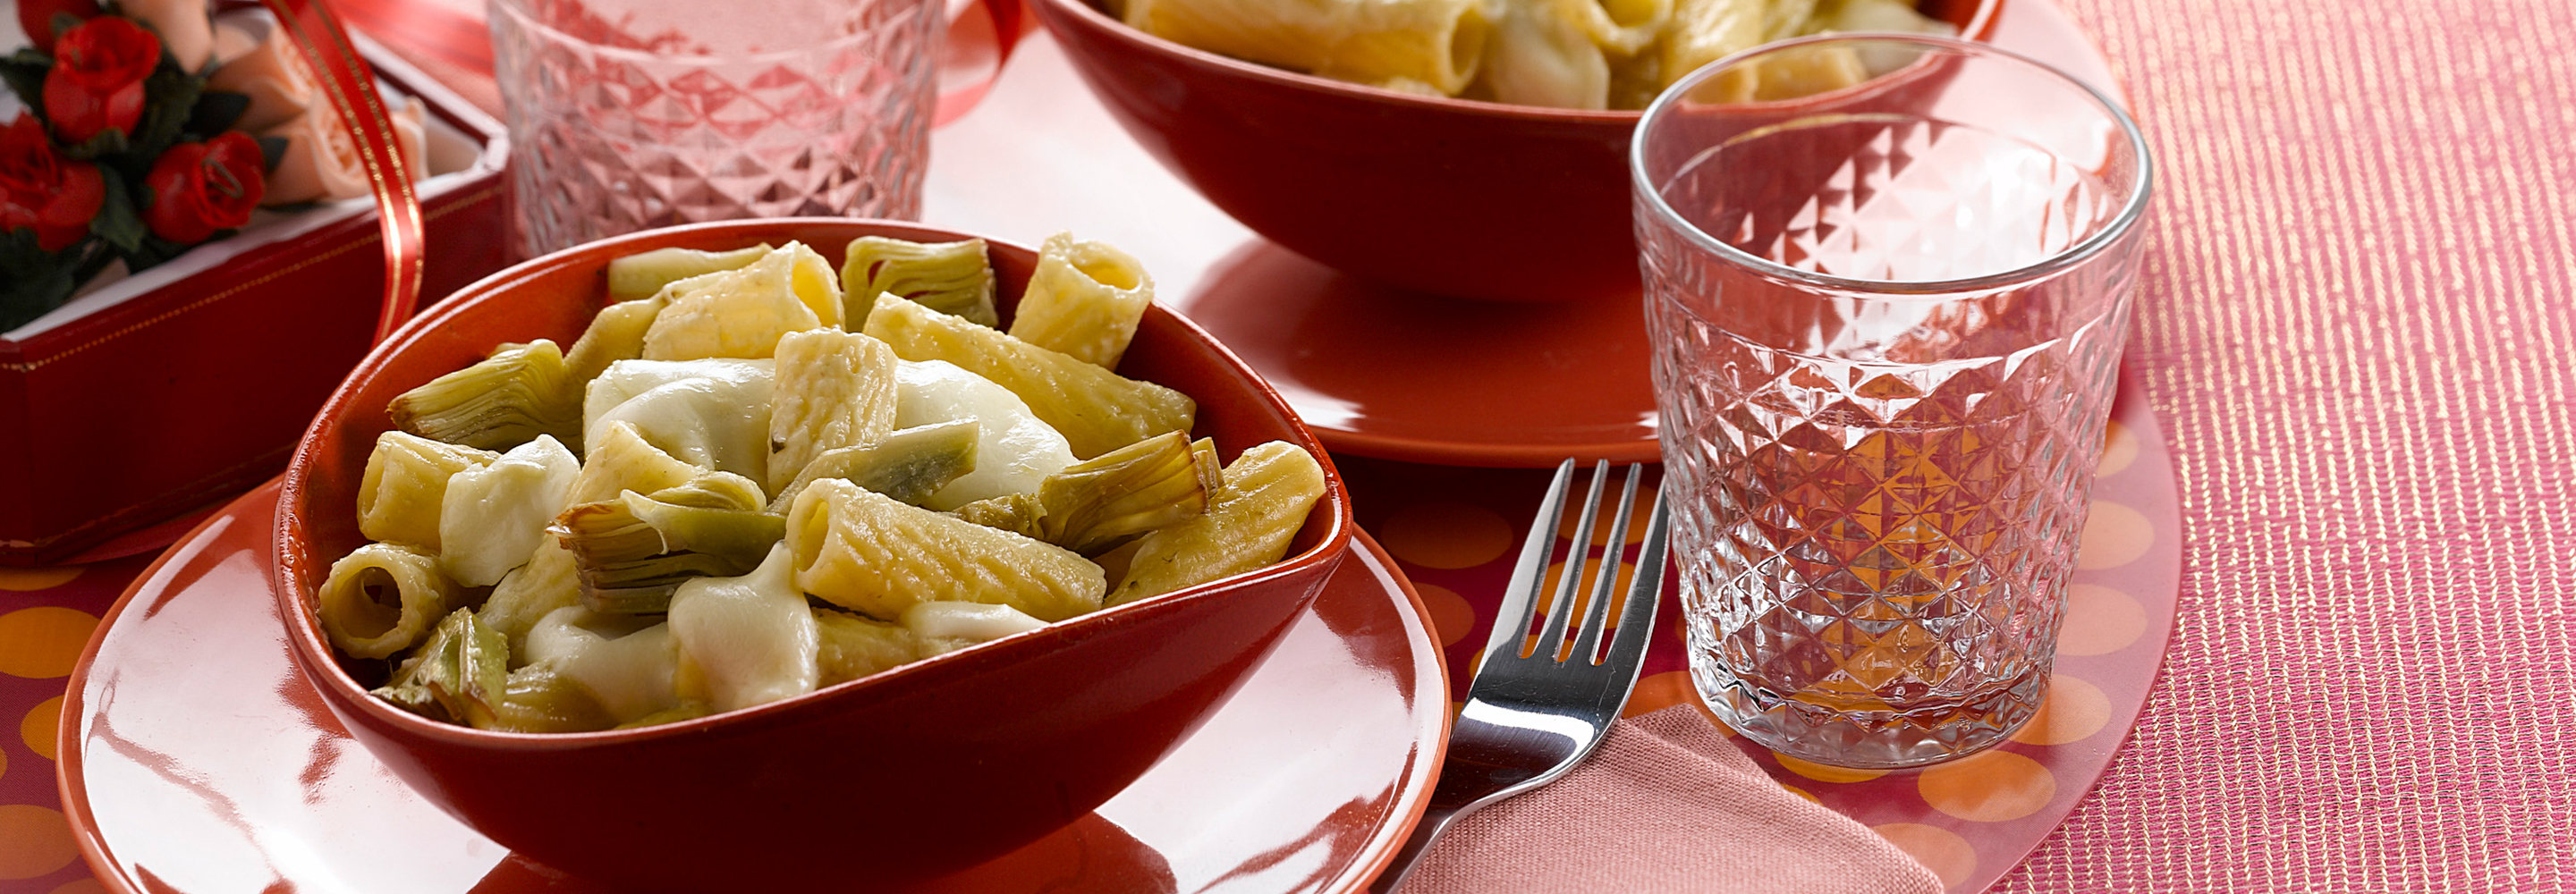 Serowe rigatoni w sosie karczochowym - Galbani – od ponad 140 lat dostarczamy najlepsze włoskie smaki na talerze całego świata